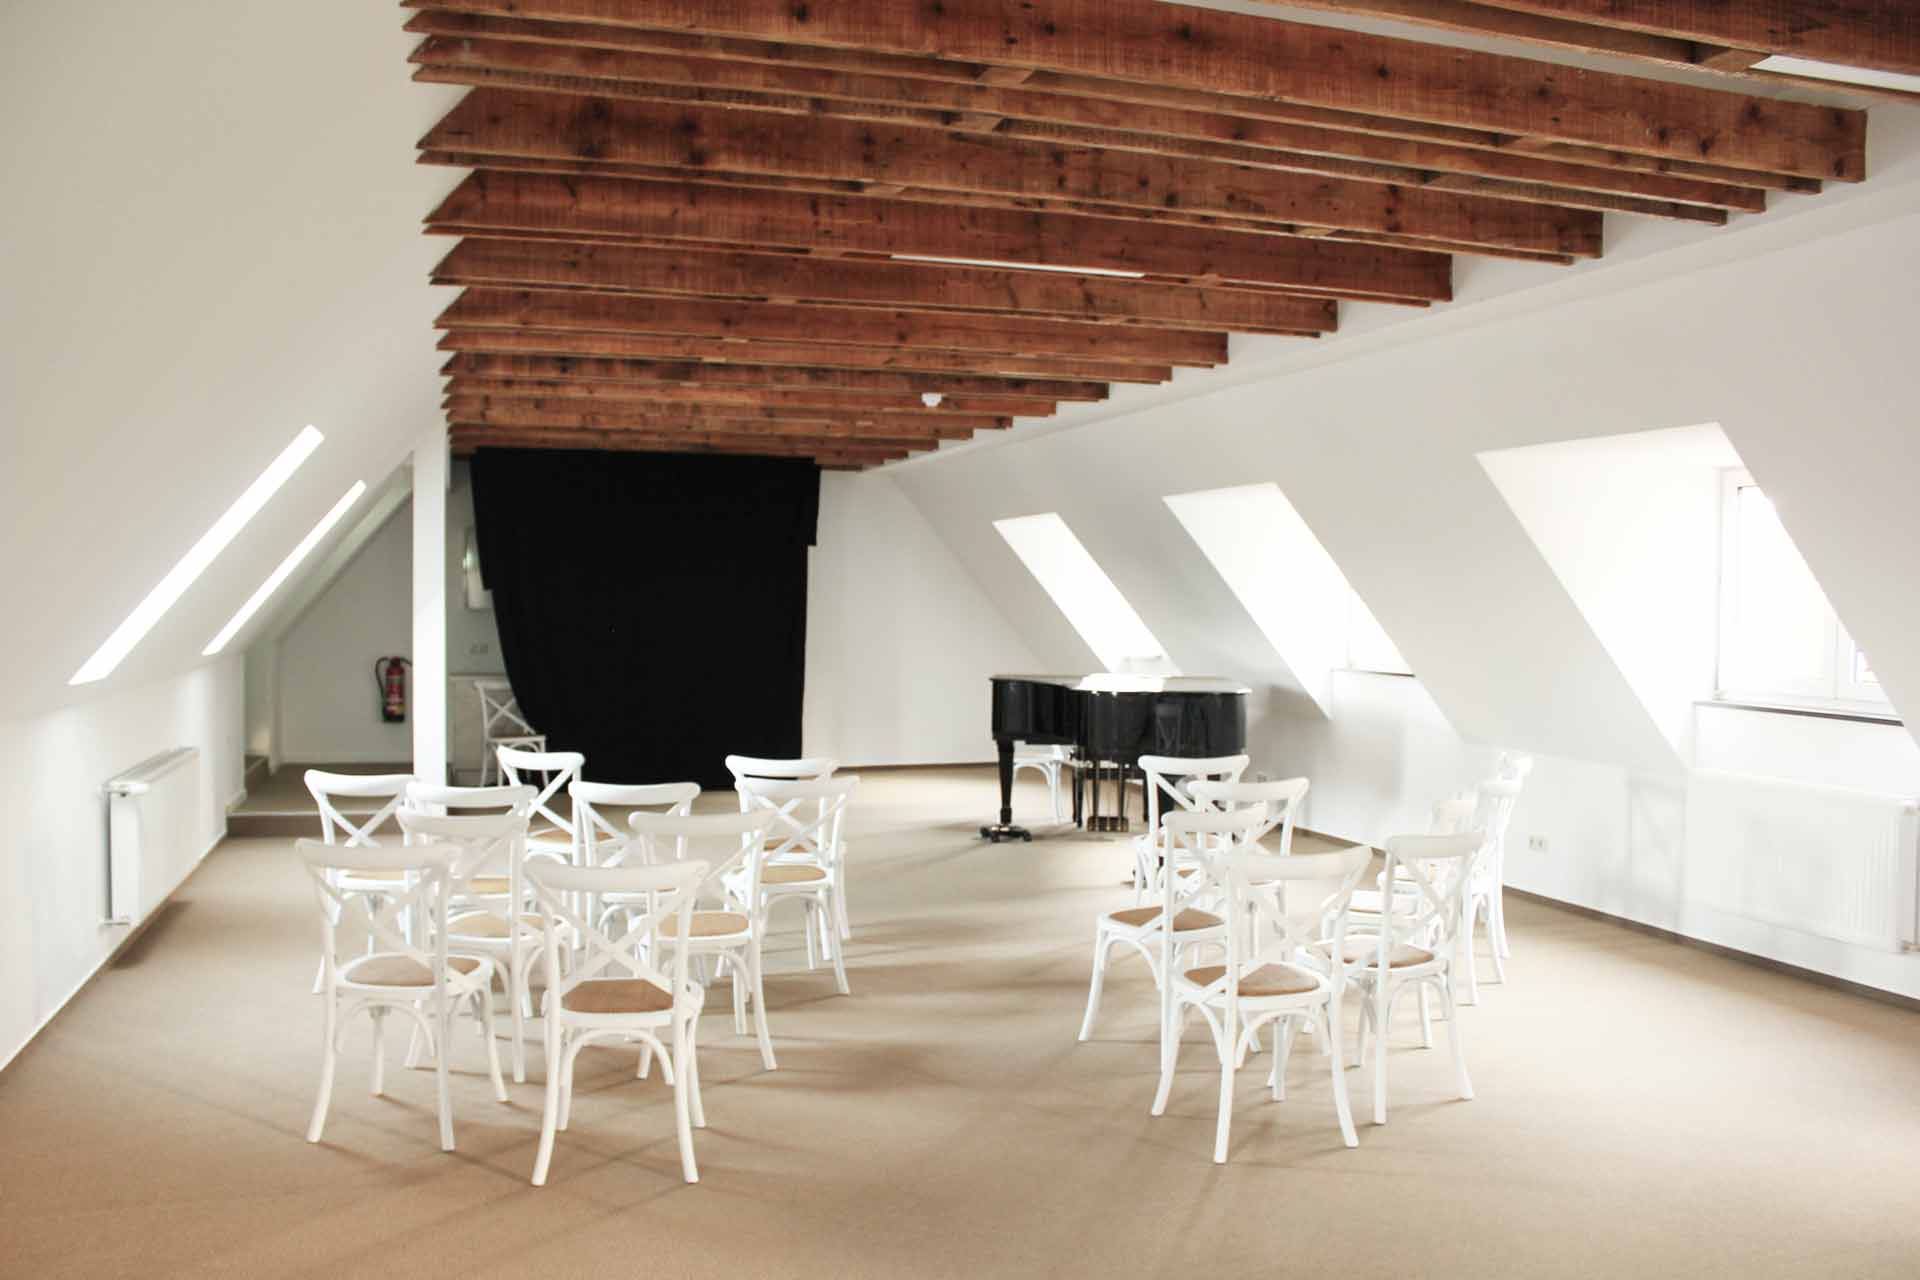 Großzügiger Raum für musikalische Veranstaltungen im Postel Wolgast. Ein Klavierflügel, mehrere weiße Stühle und viele sichtbare Holzbalken an der Decke machen den Charme des Raums aus.